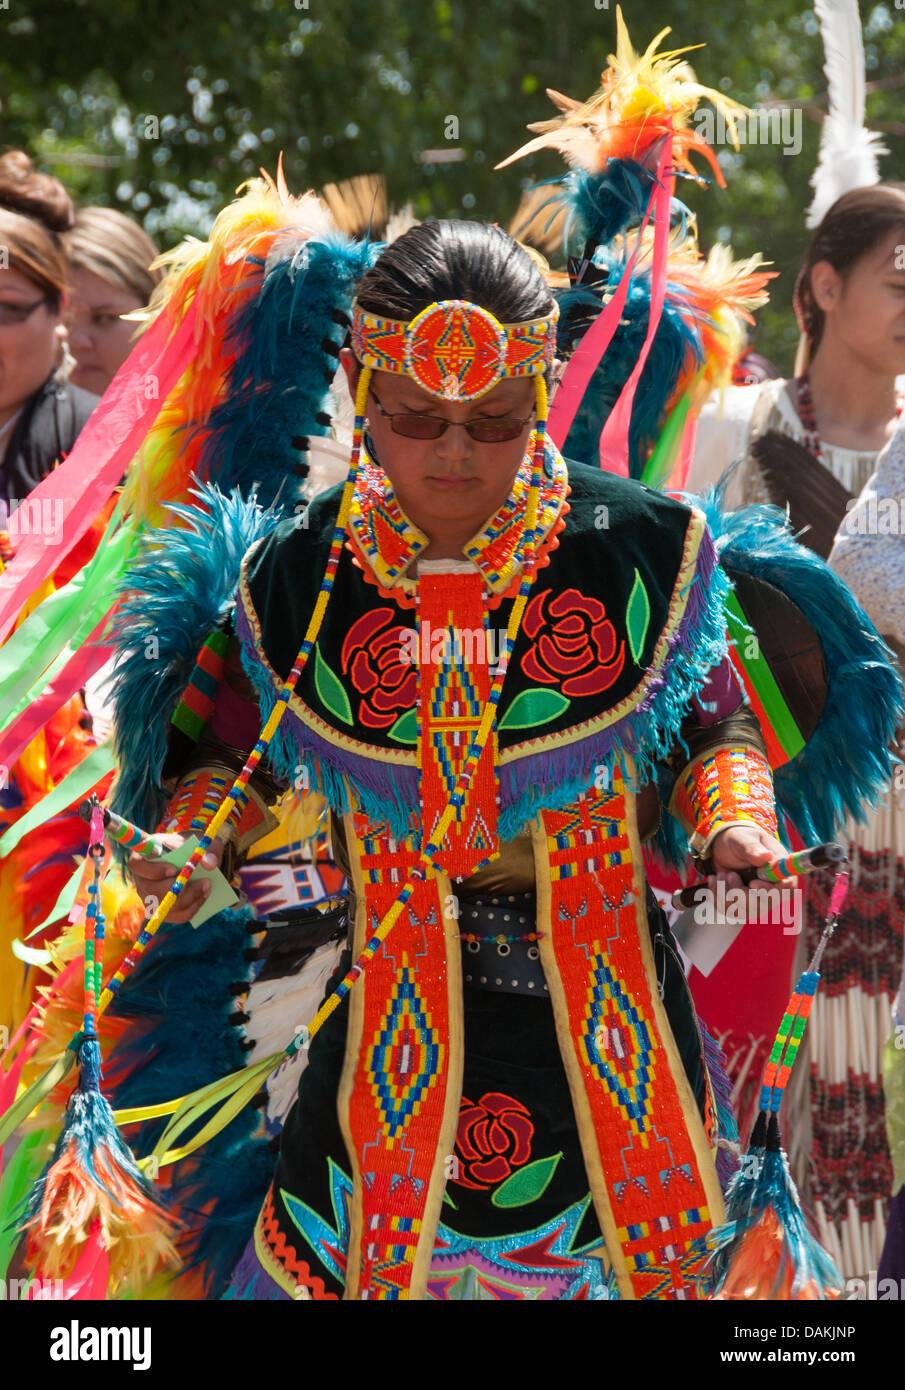 La fière nation mohawk vivant dans la communauté autochtone de Kahnawake situé sur la rive sud du fleuve Saint-Laurent, au Québec Canada célèbre son Pow-Wow annuel avec des danses traditionnelles et la musique de tambour - Banque D'Images